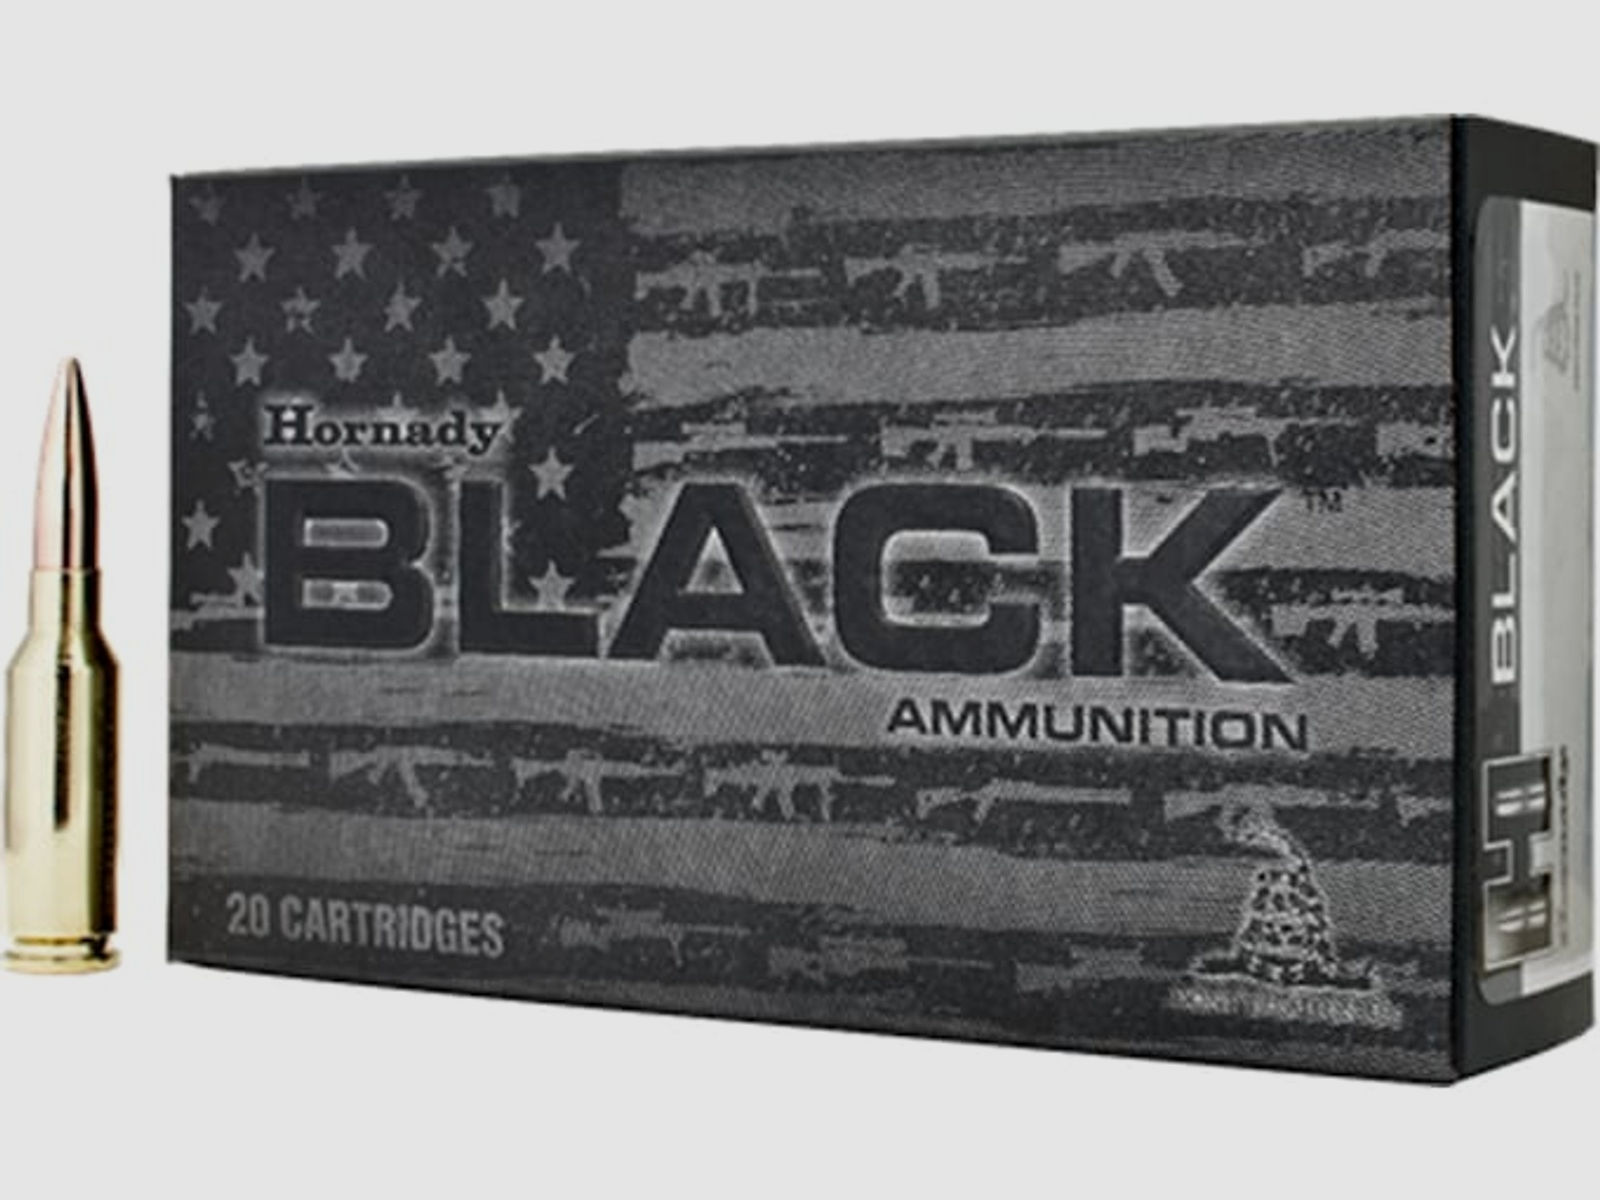 Hornady Black 6mm ARC 105GR BTHP Match 20 Patronen